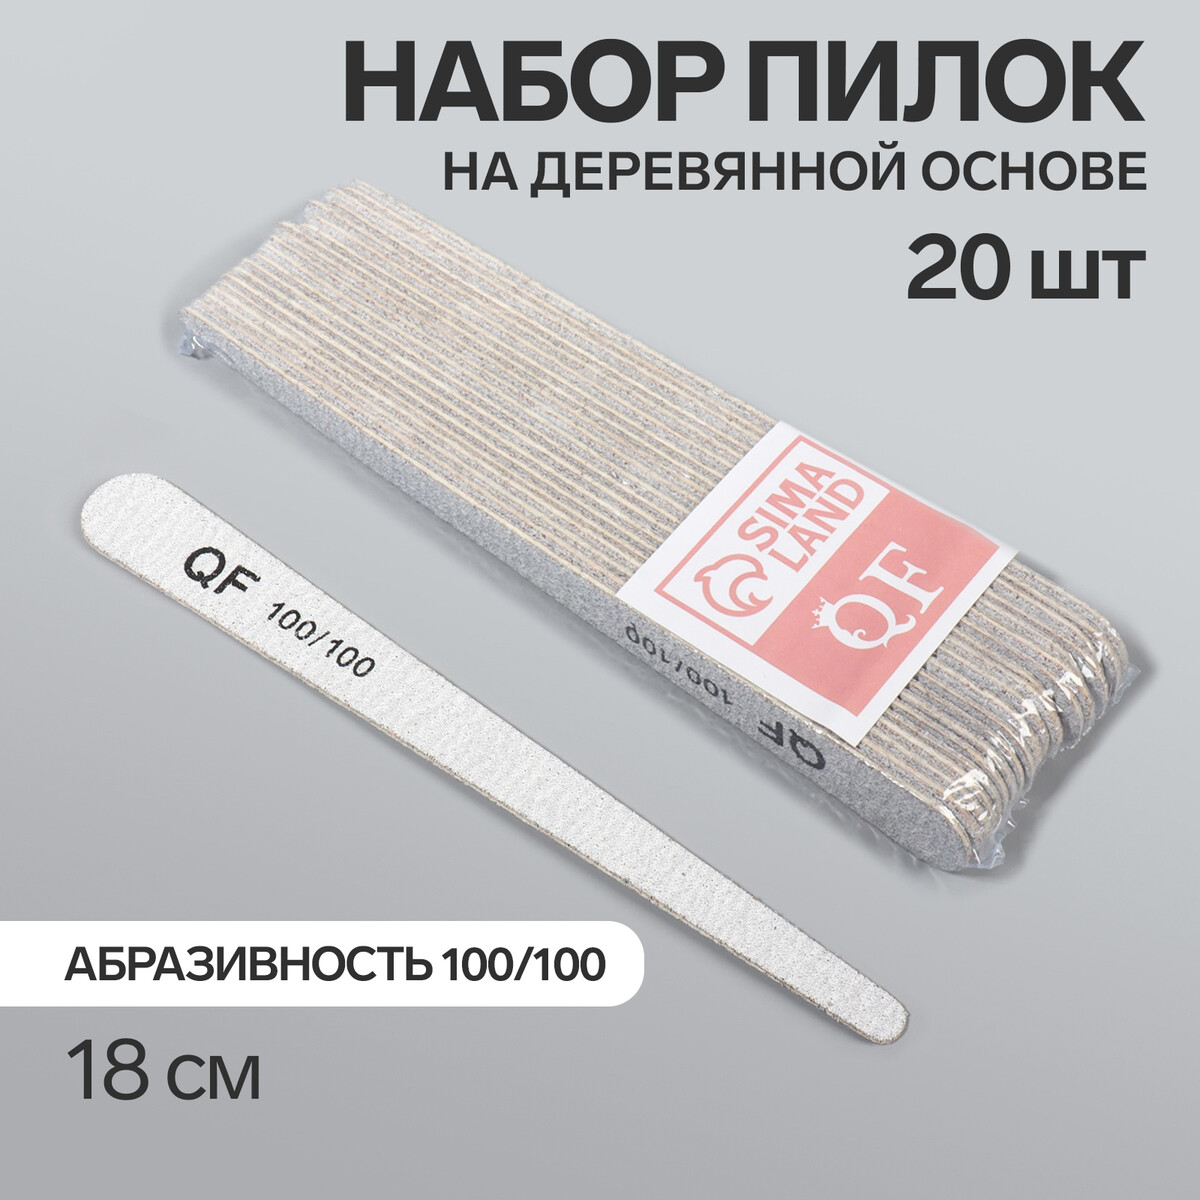 Пилка-наждак, набор 20 шт, деревянная основа, абразивность 100/100, 18 см, цвет серый палка основа для макраме деревянная без покрытия d 1 × 40 см